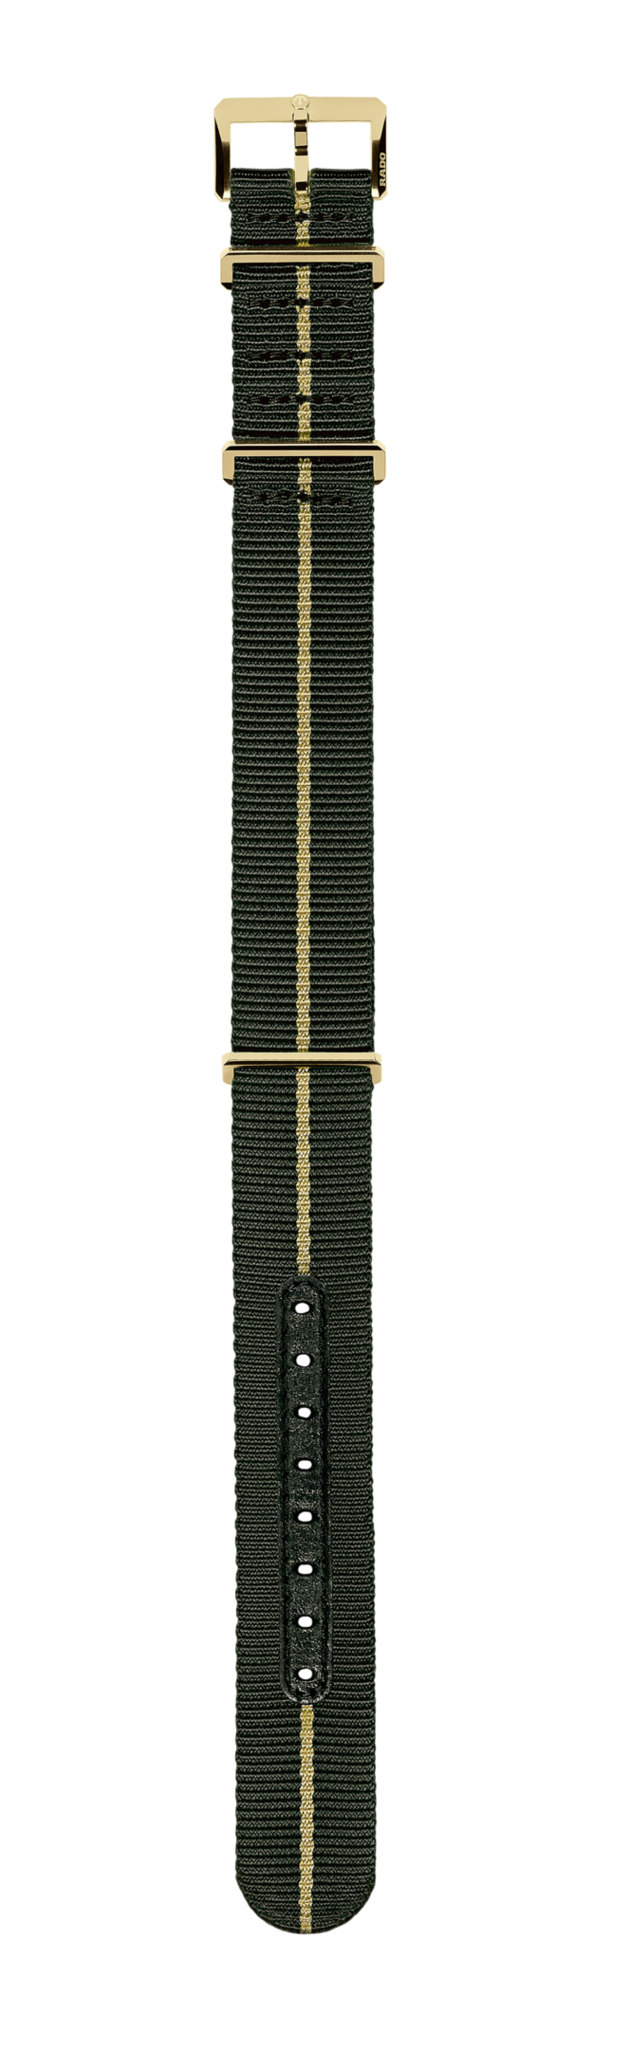 Green textile strap